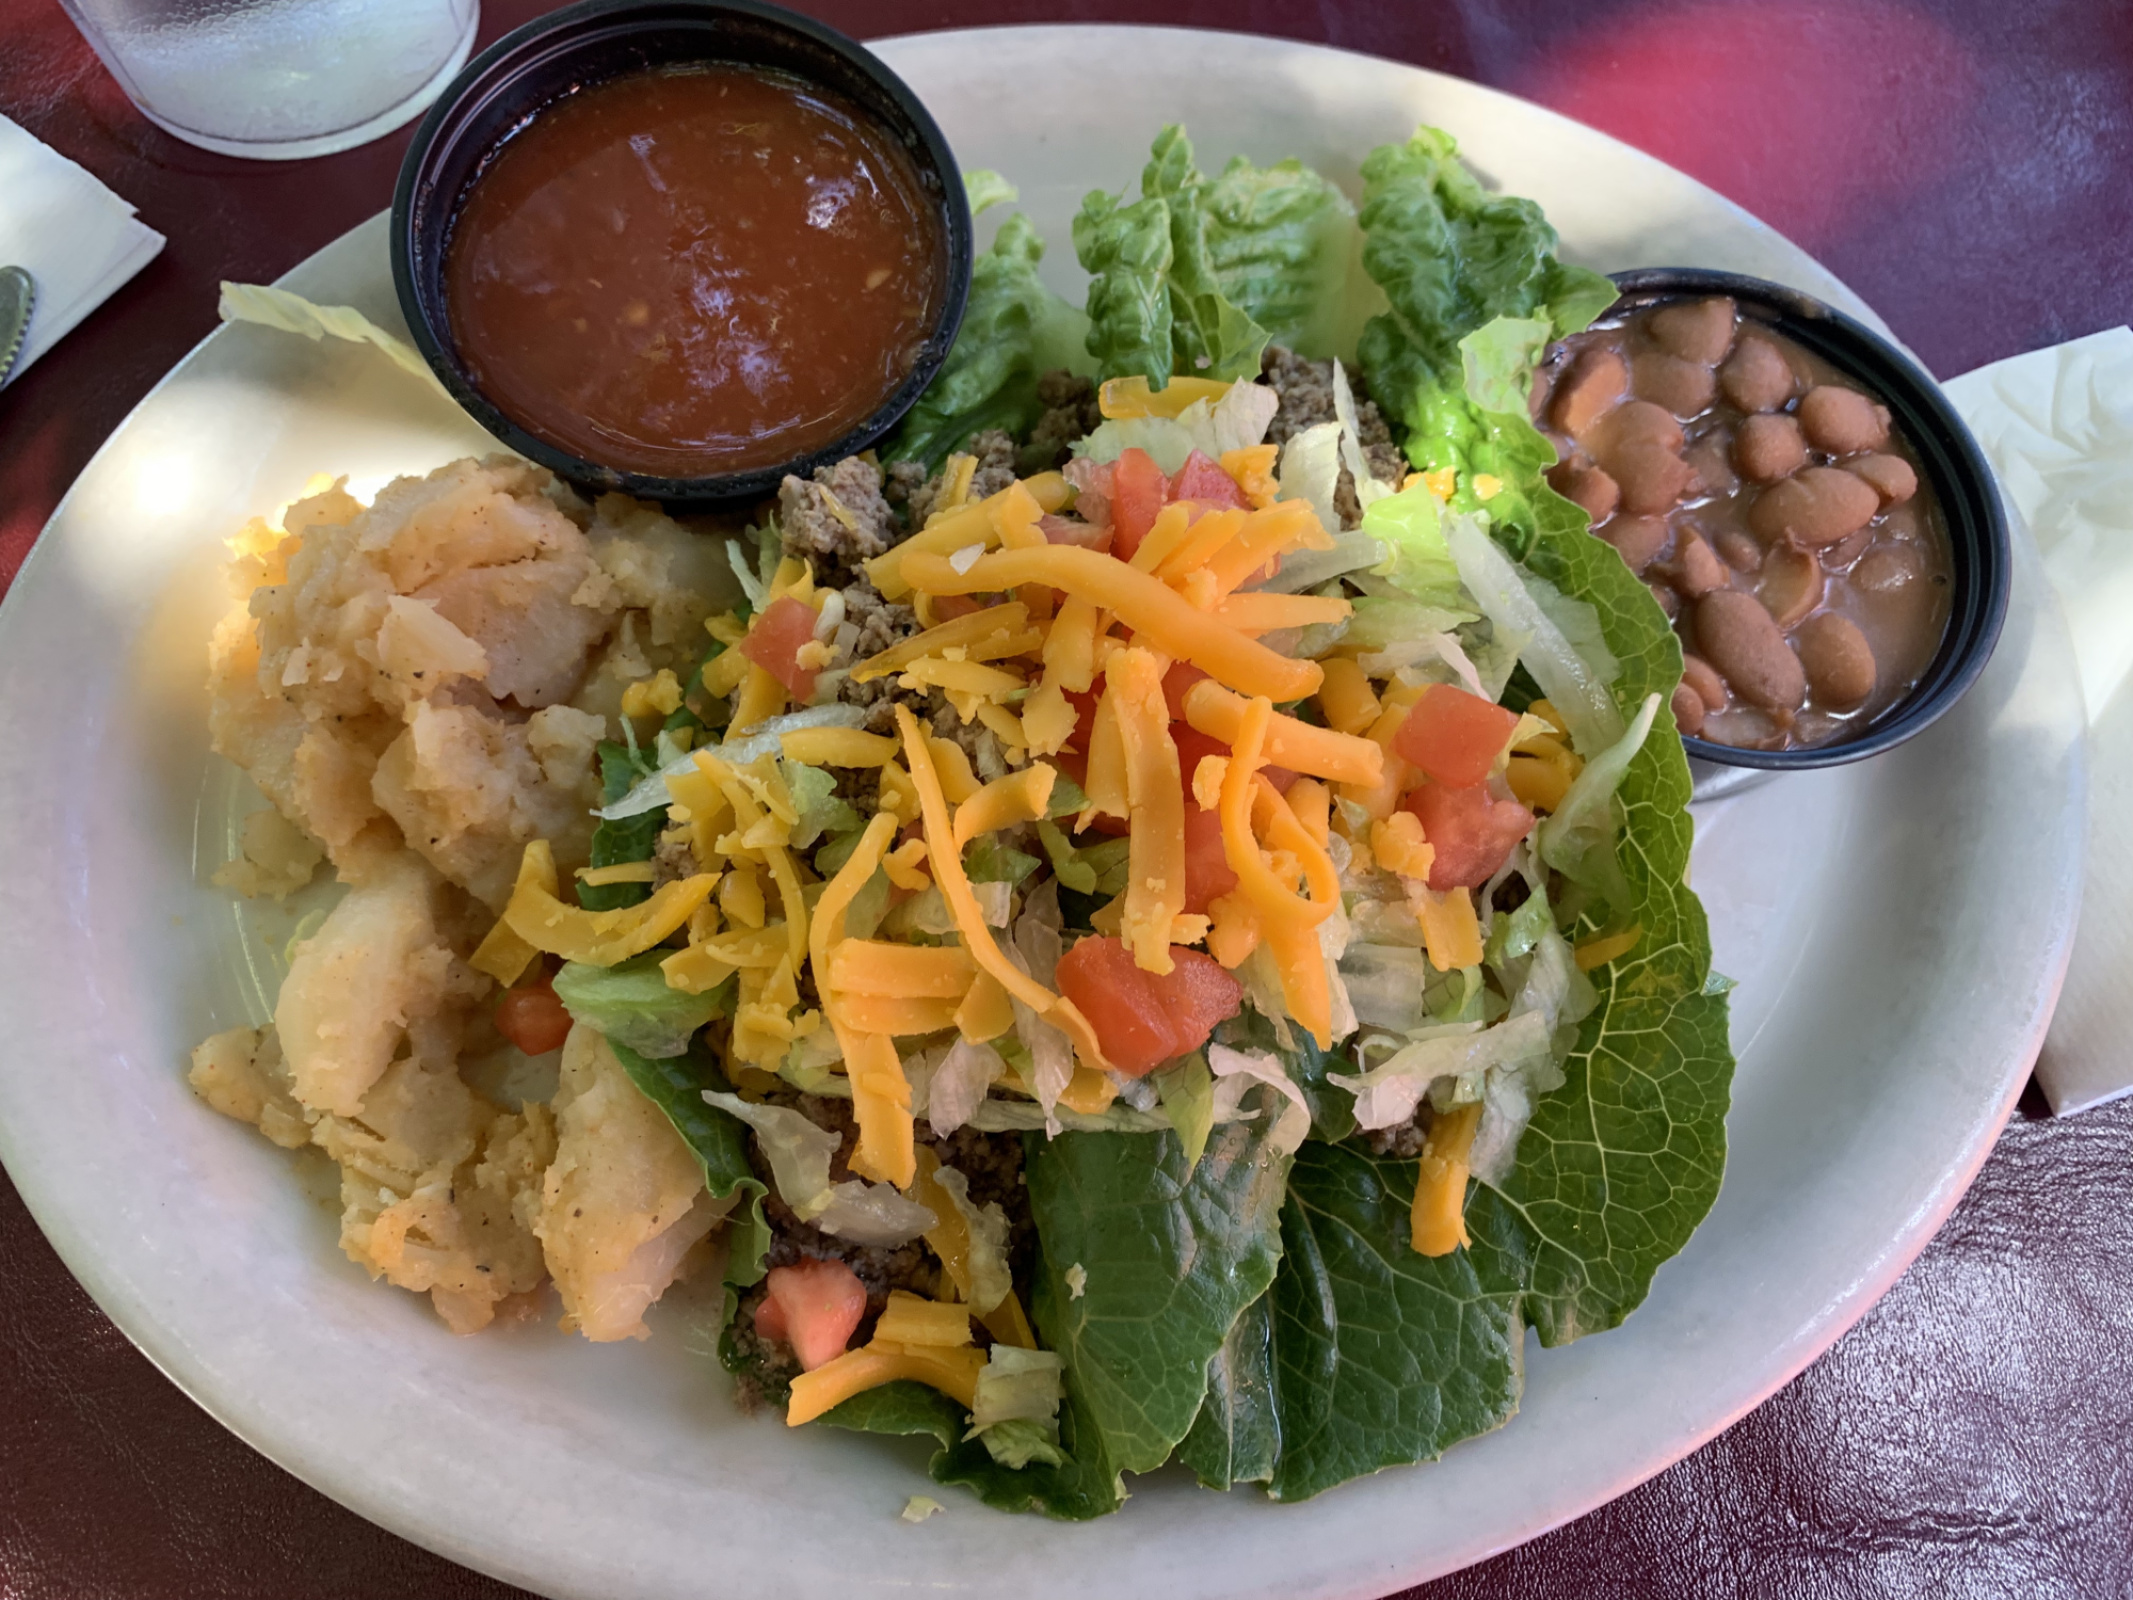 Lettuce wrapped tacos from El Patio in Albuquerque!  Mom and I had a fantastic lunch.  (El Patio De Albuquerque
142 Harvard Dr SE). 